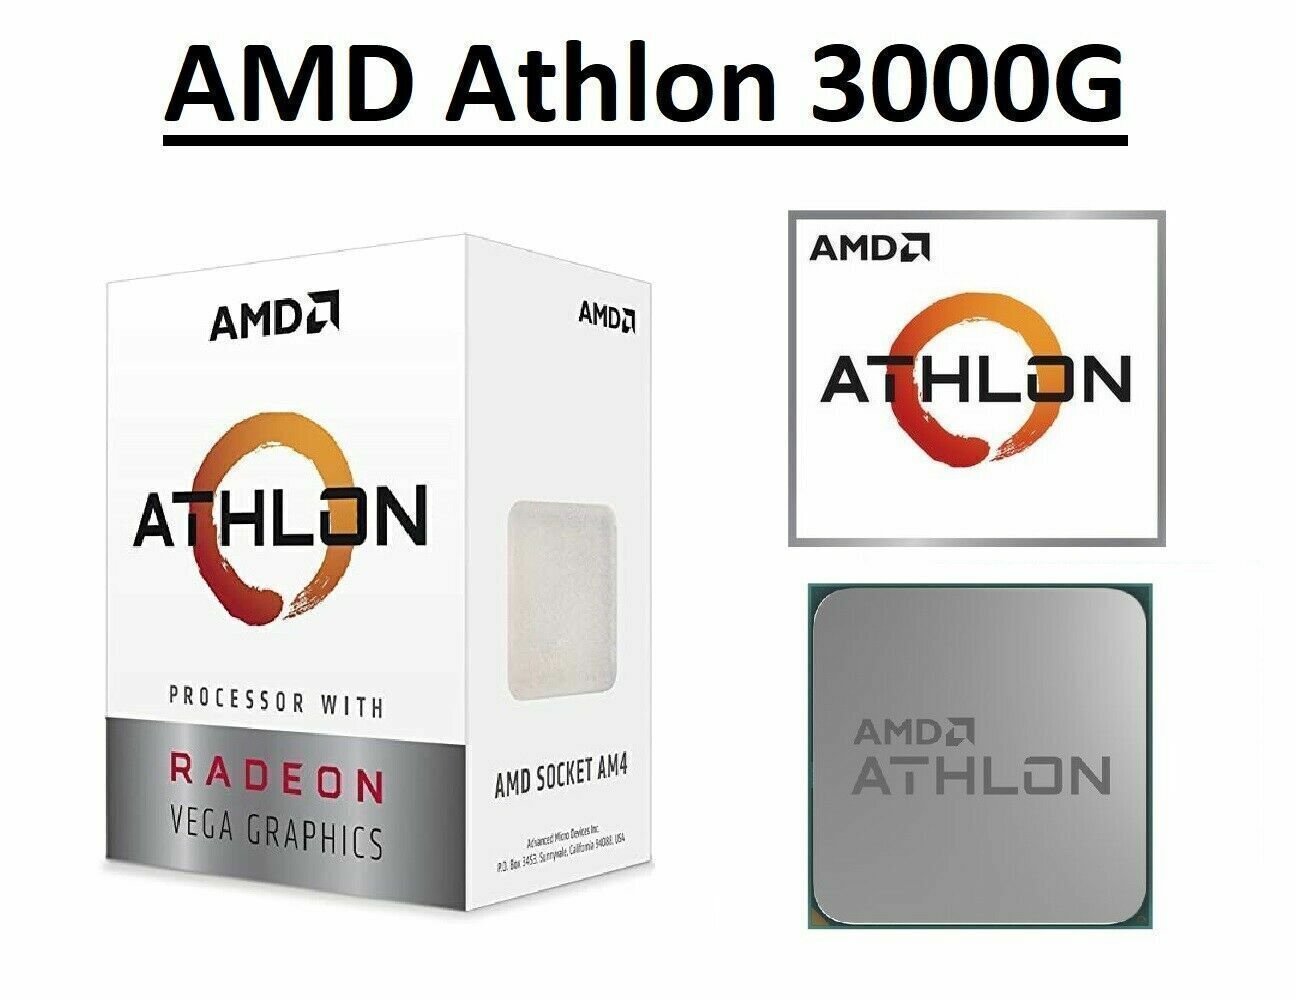 AMD Athlon 3000G CPU Radeon Graphics 2 Cores 4 Threads 3.5GHz 2667MHz Processor